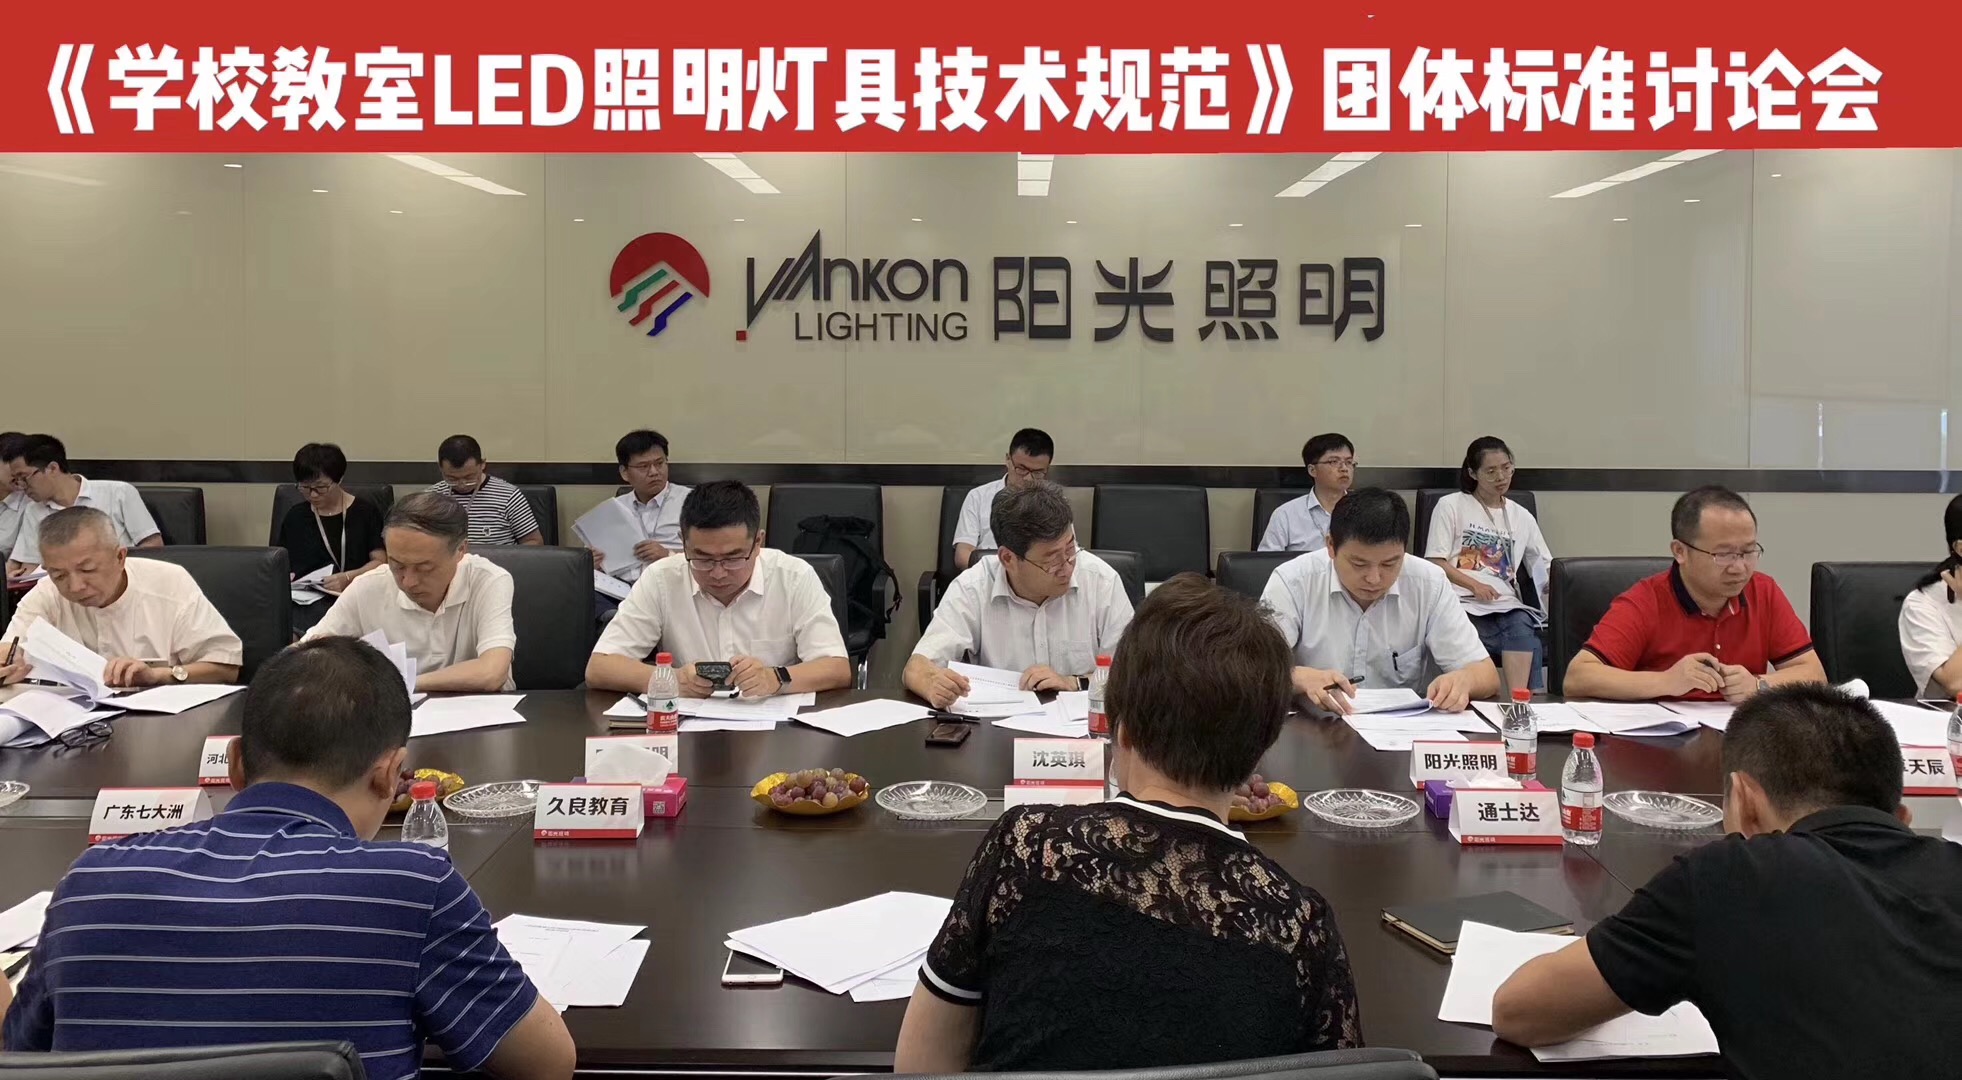 团体标准《学校教室LED照明灯具技术规范》 研讨会在浙江阳光照明召开